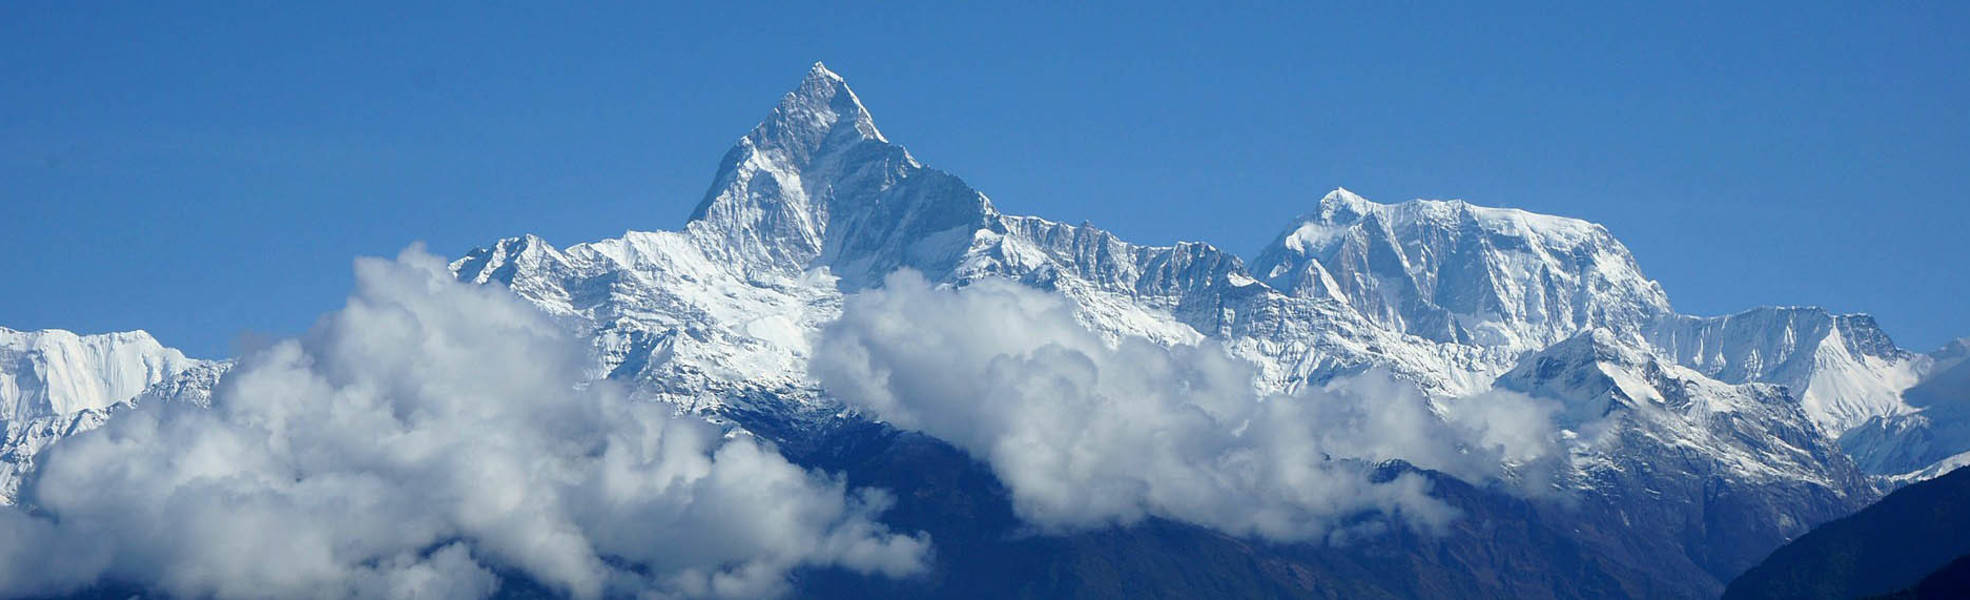 Nepal: Himalaya Mountains